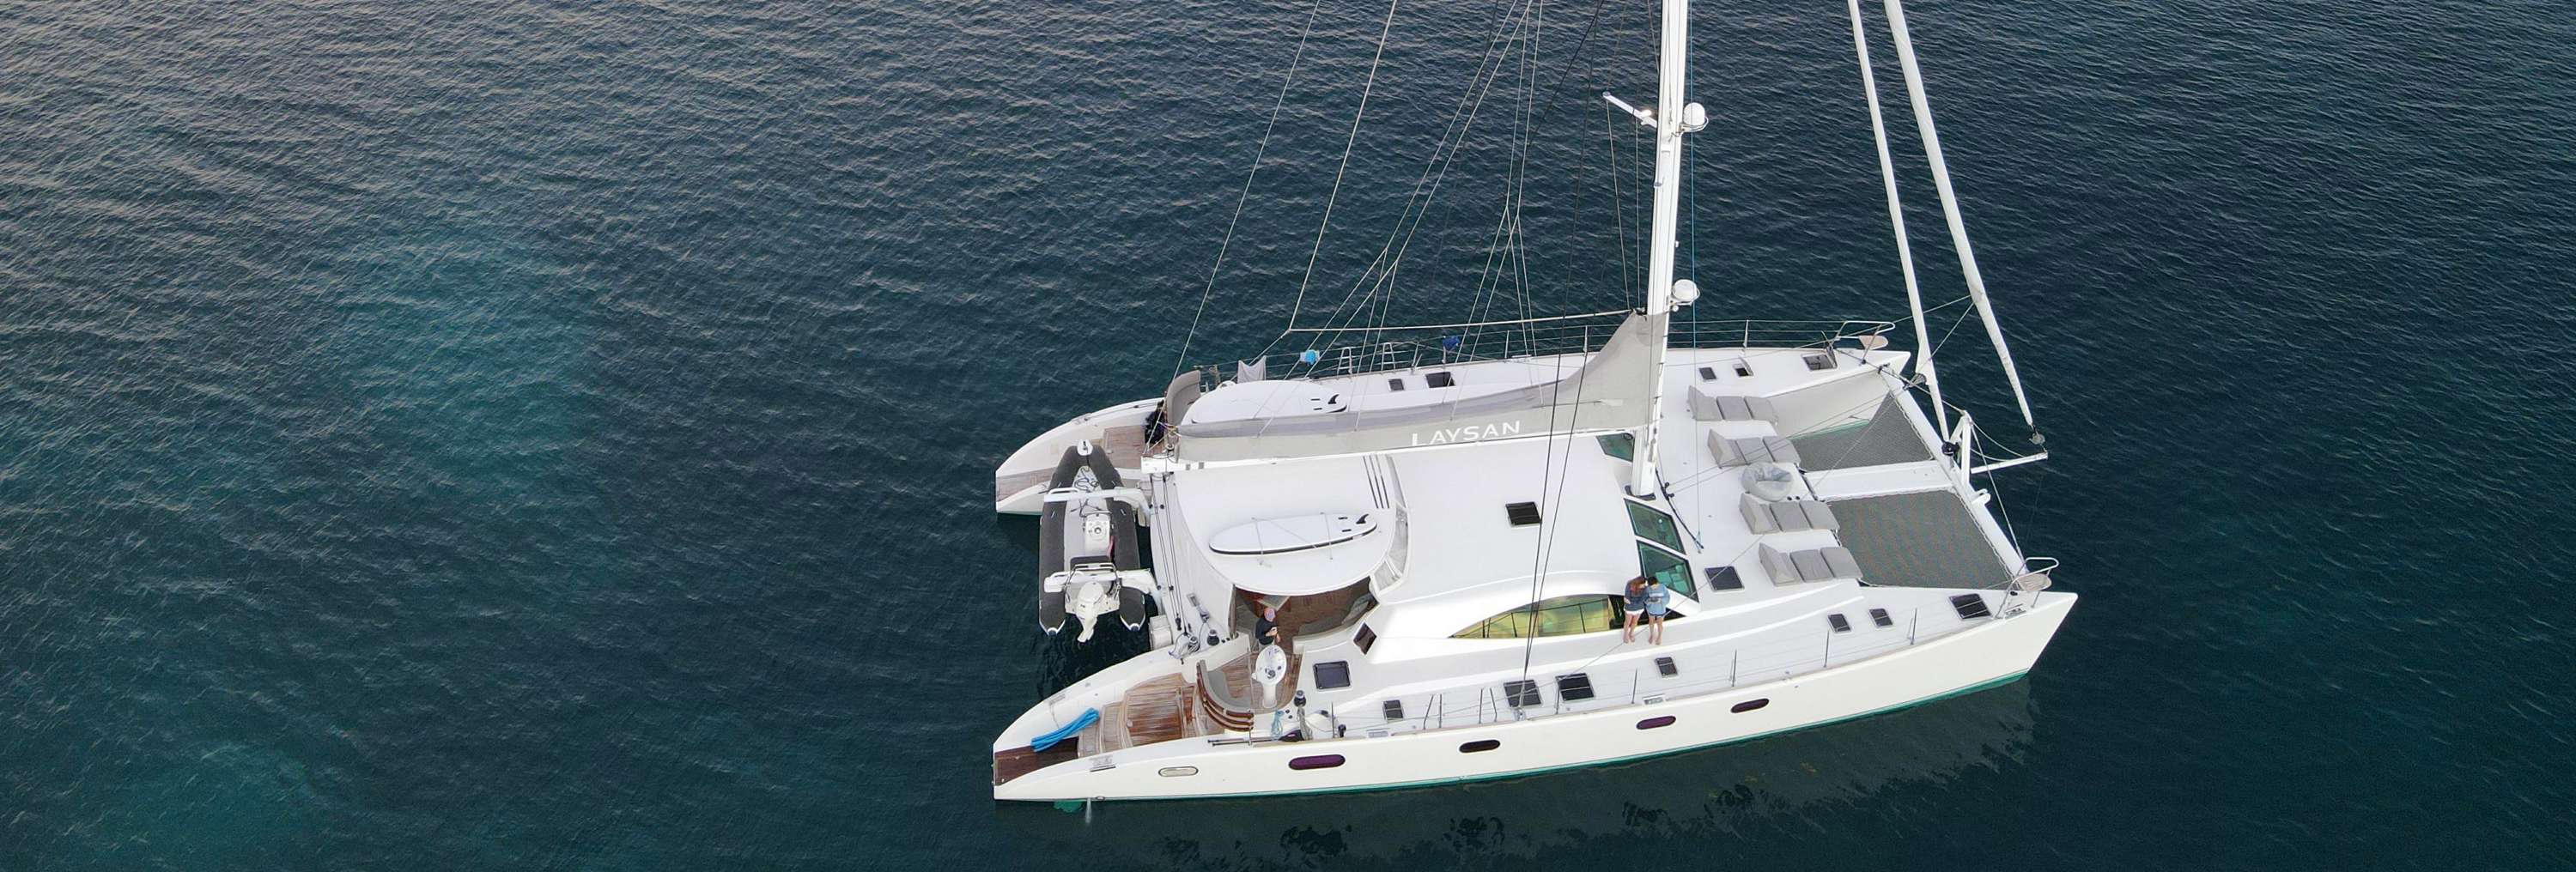 LAYSAN Catamaran : New Destinations